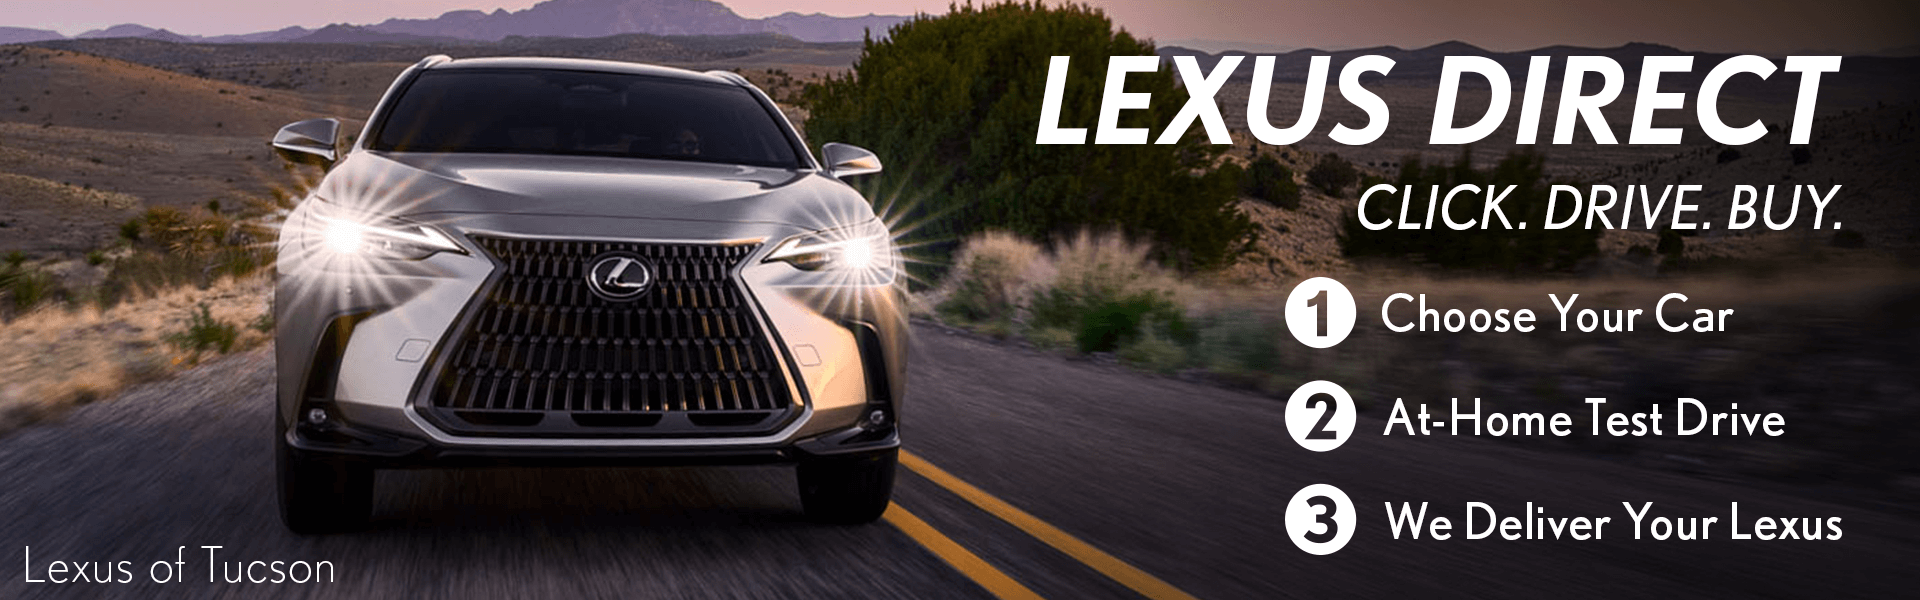 Lexus Direct at Lexus of Tucson Auto Mall Tucson AZ